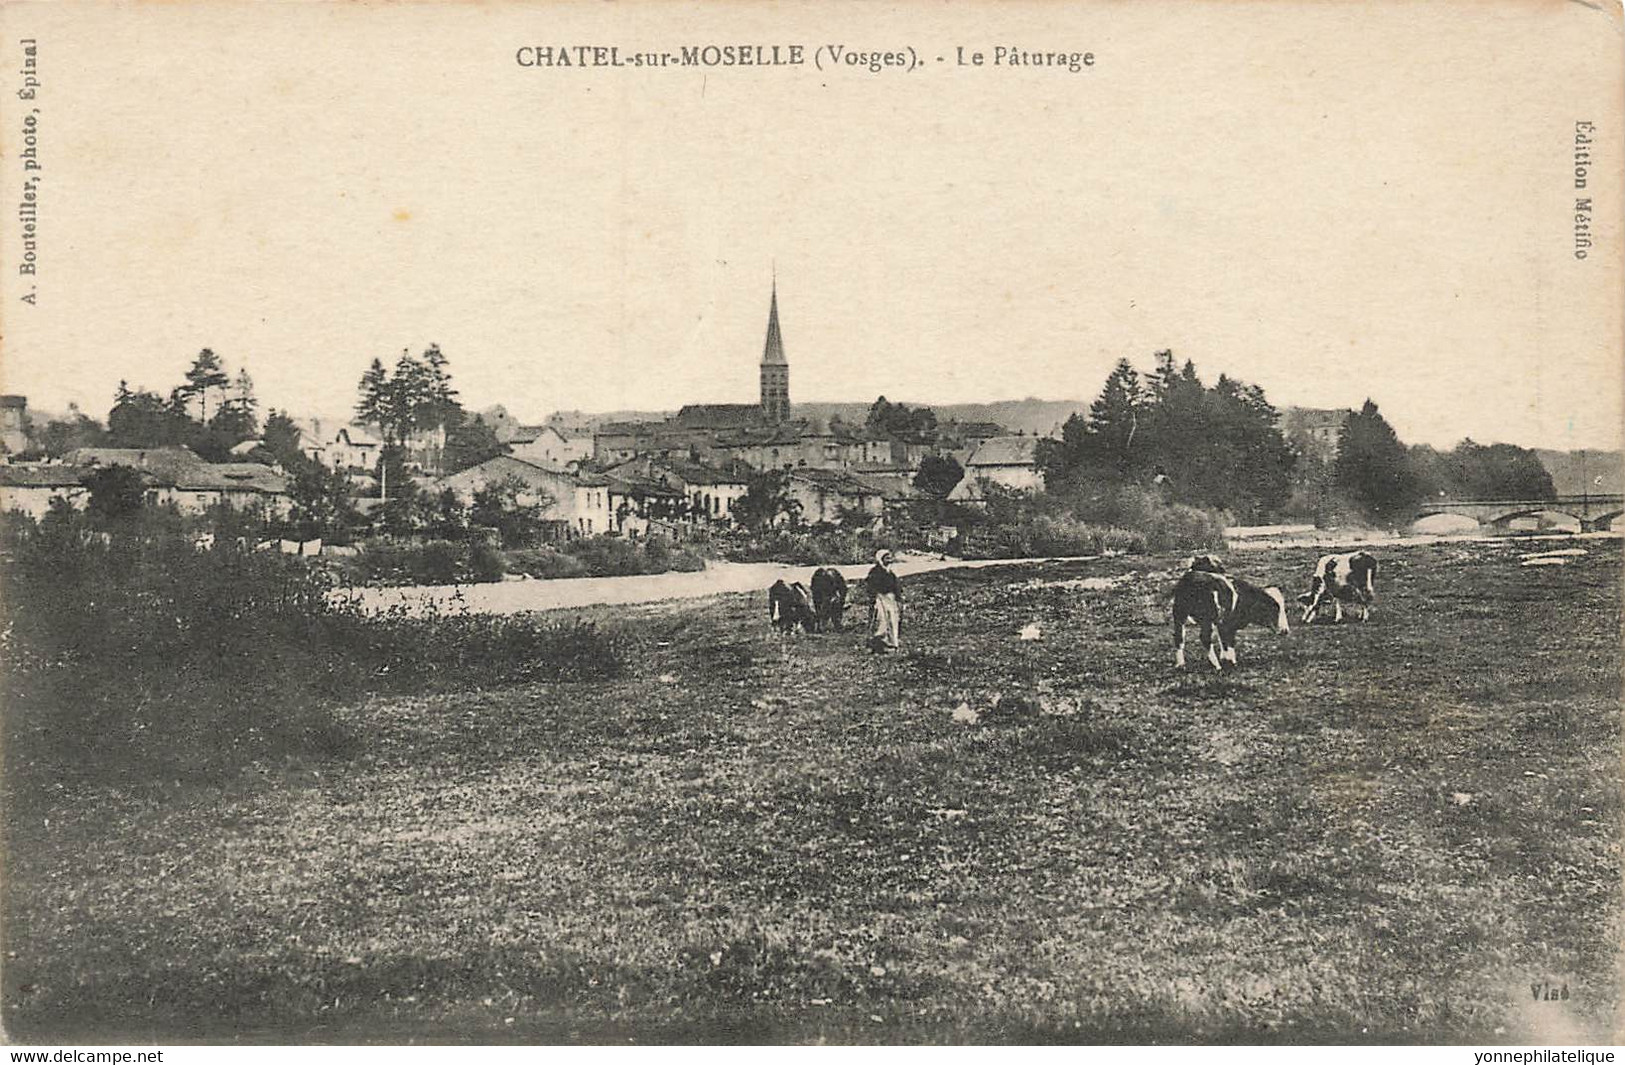 88 - VOSGES - CHATEL-SUR-MOSELLE - Le Pâturage - Scène Champêtre - Beau Cliché A.Bouteiller Photo-10140 - Chatel Sur Moselle